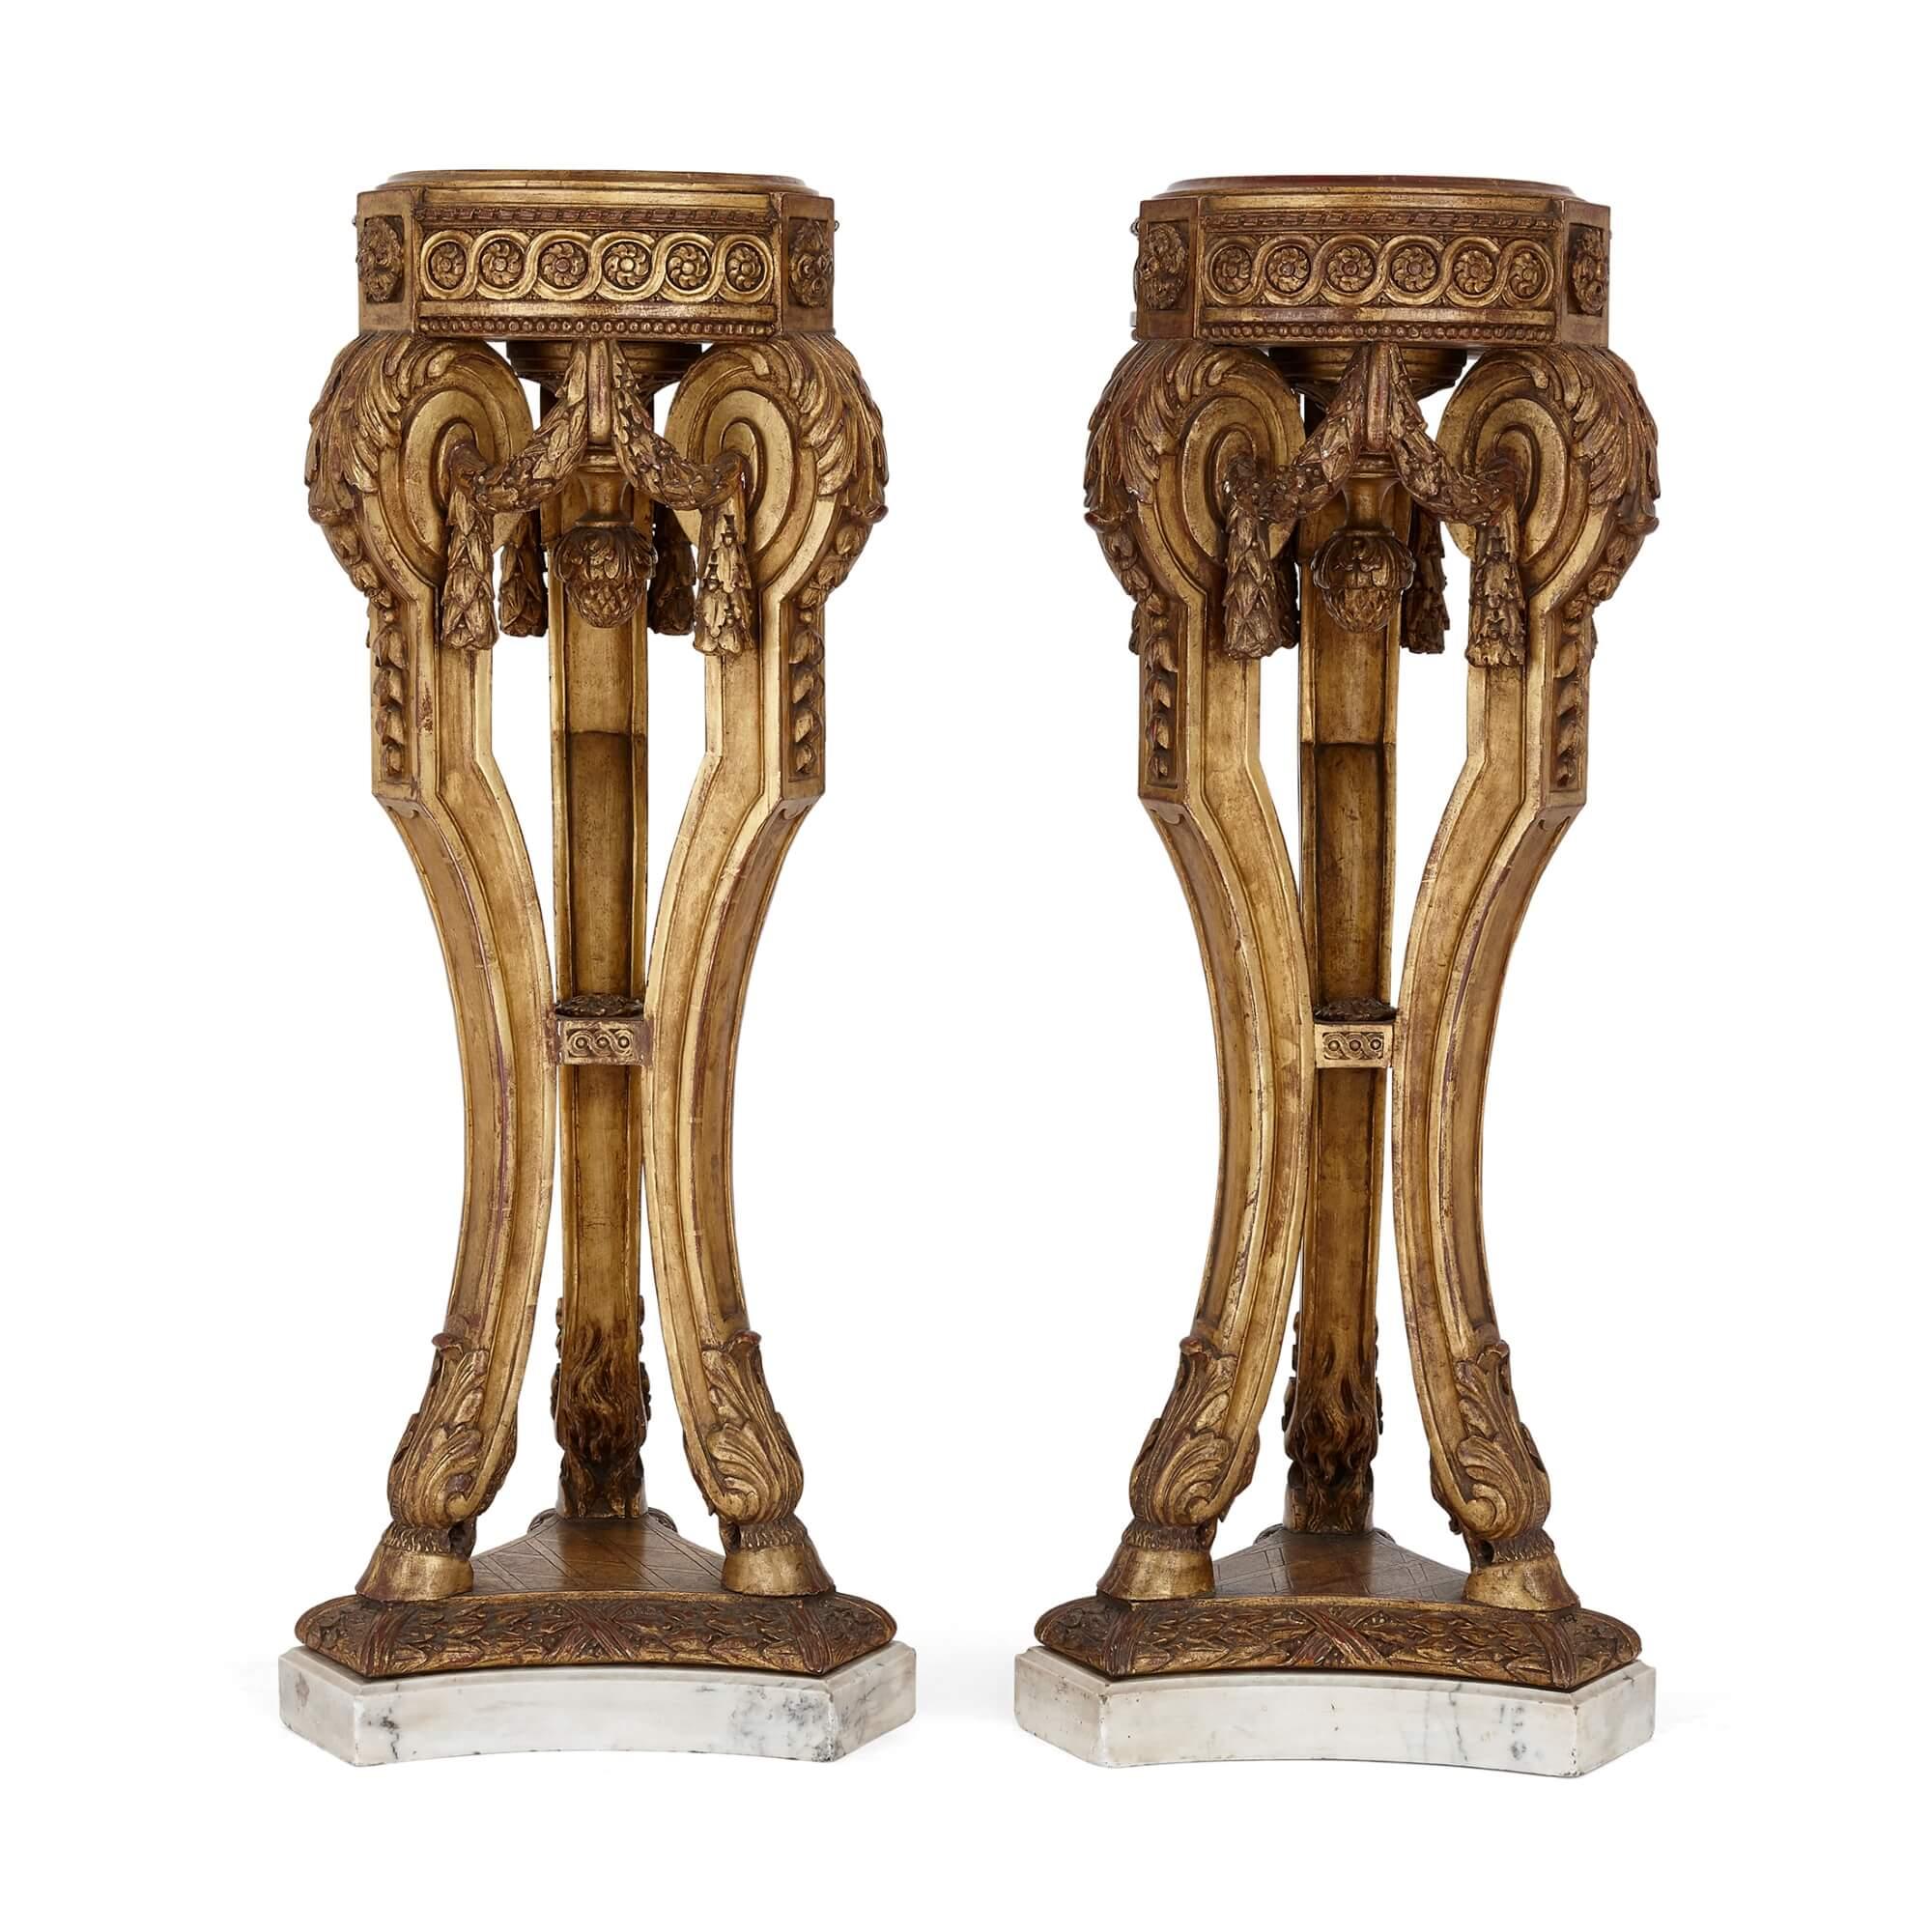 Paar Sockel aus Goldholz und Marmor im Louis-XVI-Stil
Französisch, Ende 19. Jahrhundert
Höhe 98cm, Durchmesser 35cm

Die prächtigen Dreibein-Sockel dieses Paares sind schöne Beispiele für den Louis XVI-Stil. Die Sockel aus vergoldetem Holz haben